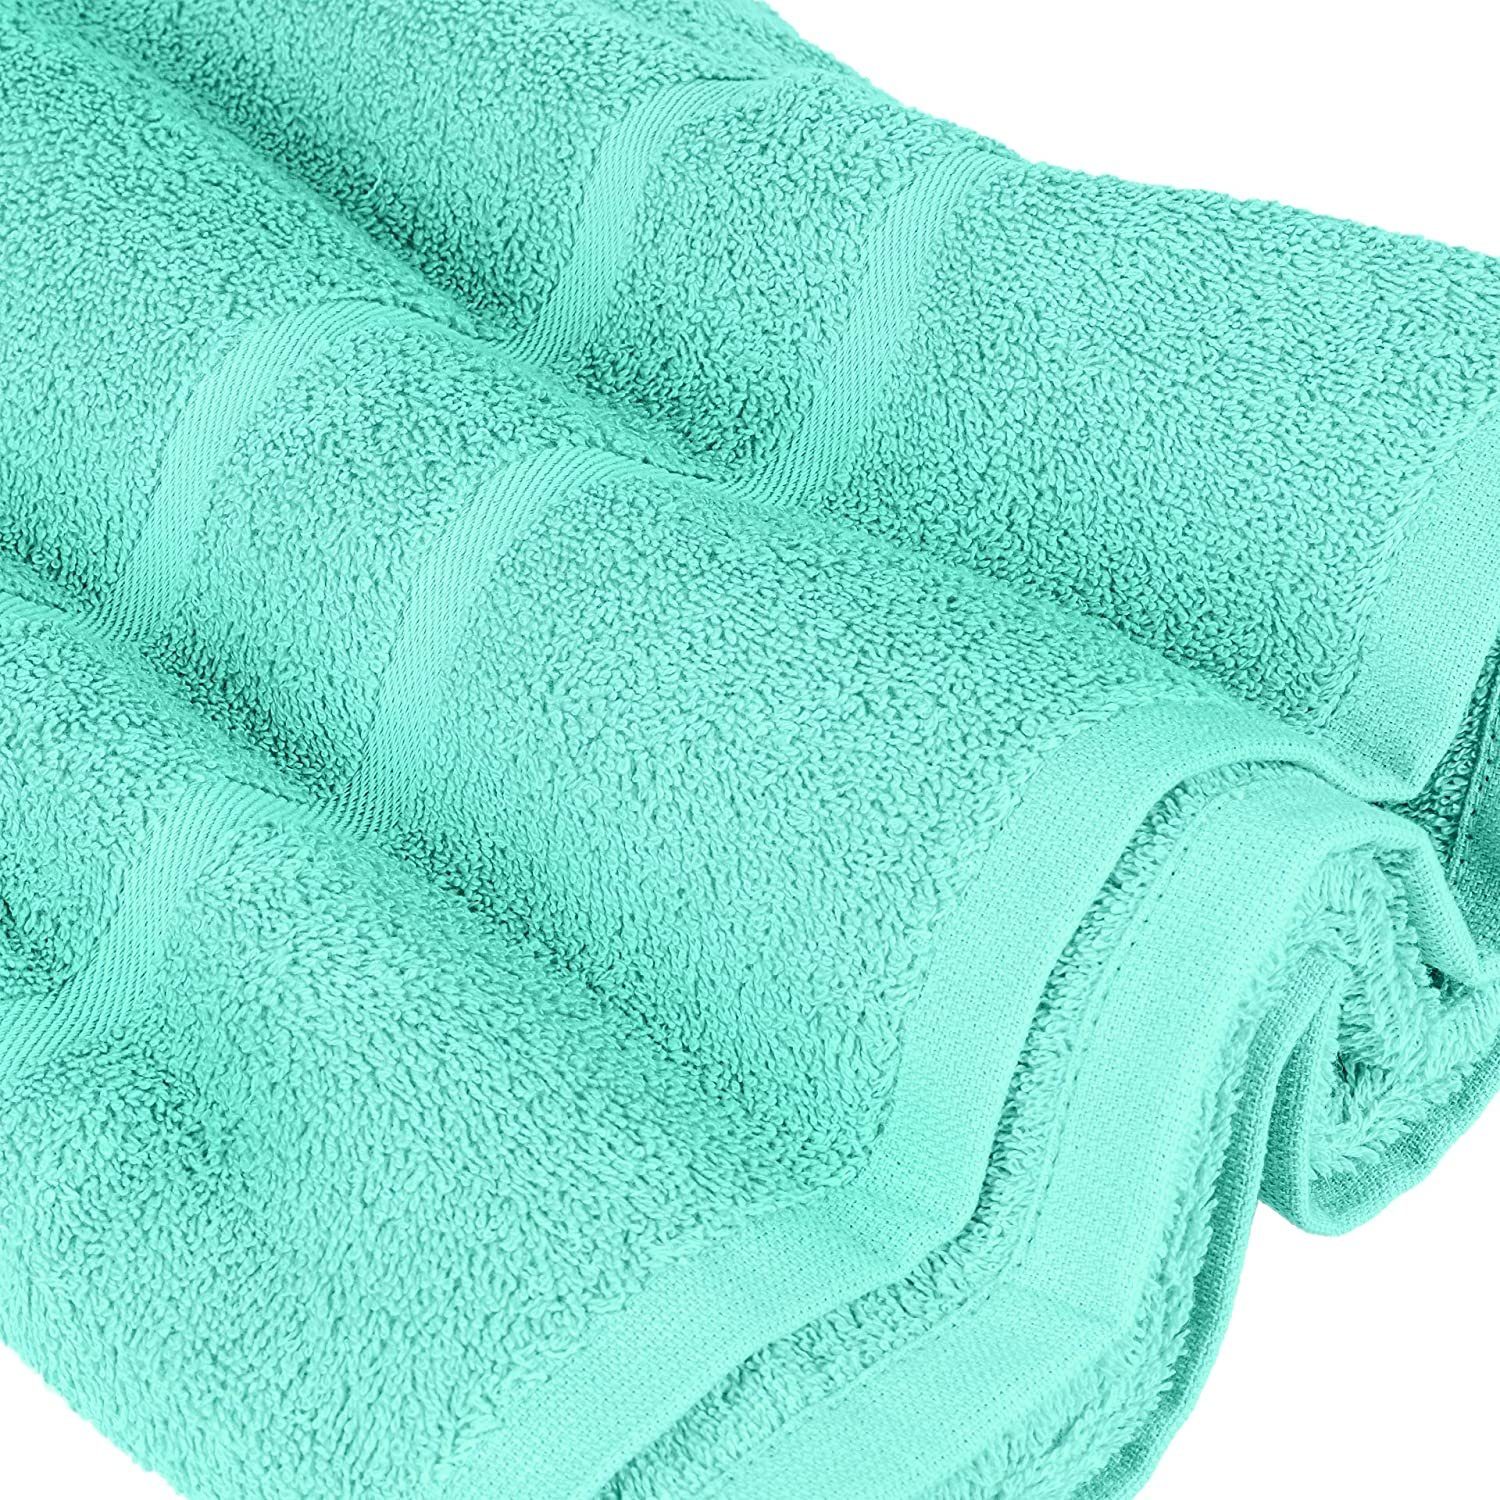 StickandShine Handtuch Set 4x Gästehandtuch SET (Spar-SET) 100% Baumwolle, 4x Mint 2x Handtücher Duschtücher